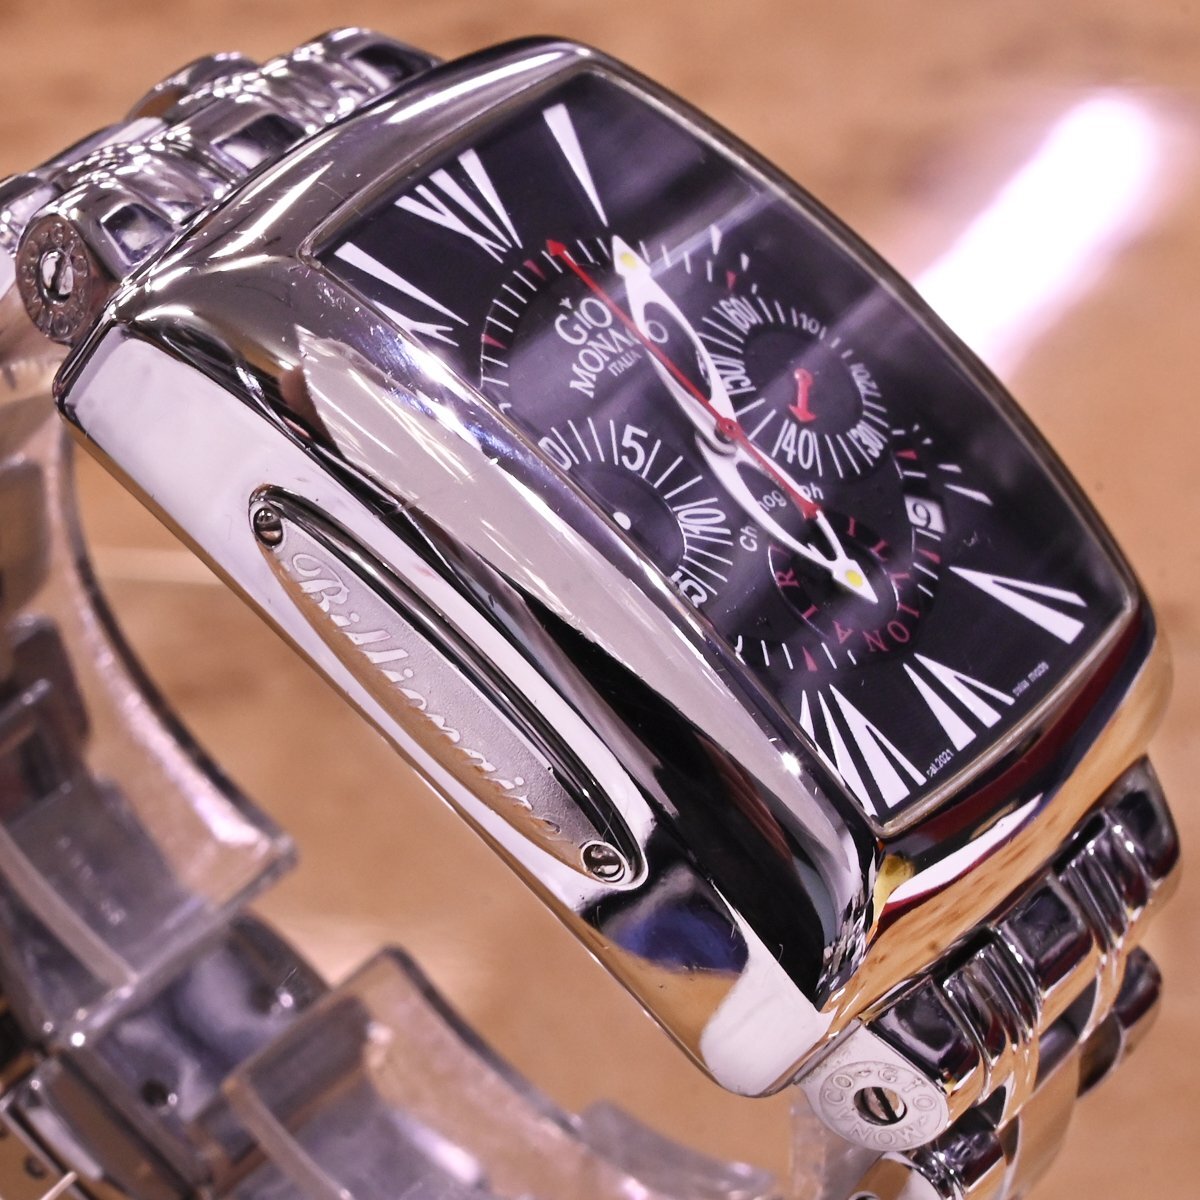 本物 超美品 ジオモナコ 極希少 オートマチック クロノグラフ ビリオネア メンズウォッチ 男性用自動巻腕時計 純正SSブレス GIO MONACOの画像5